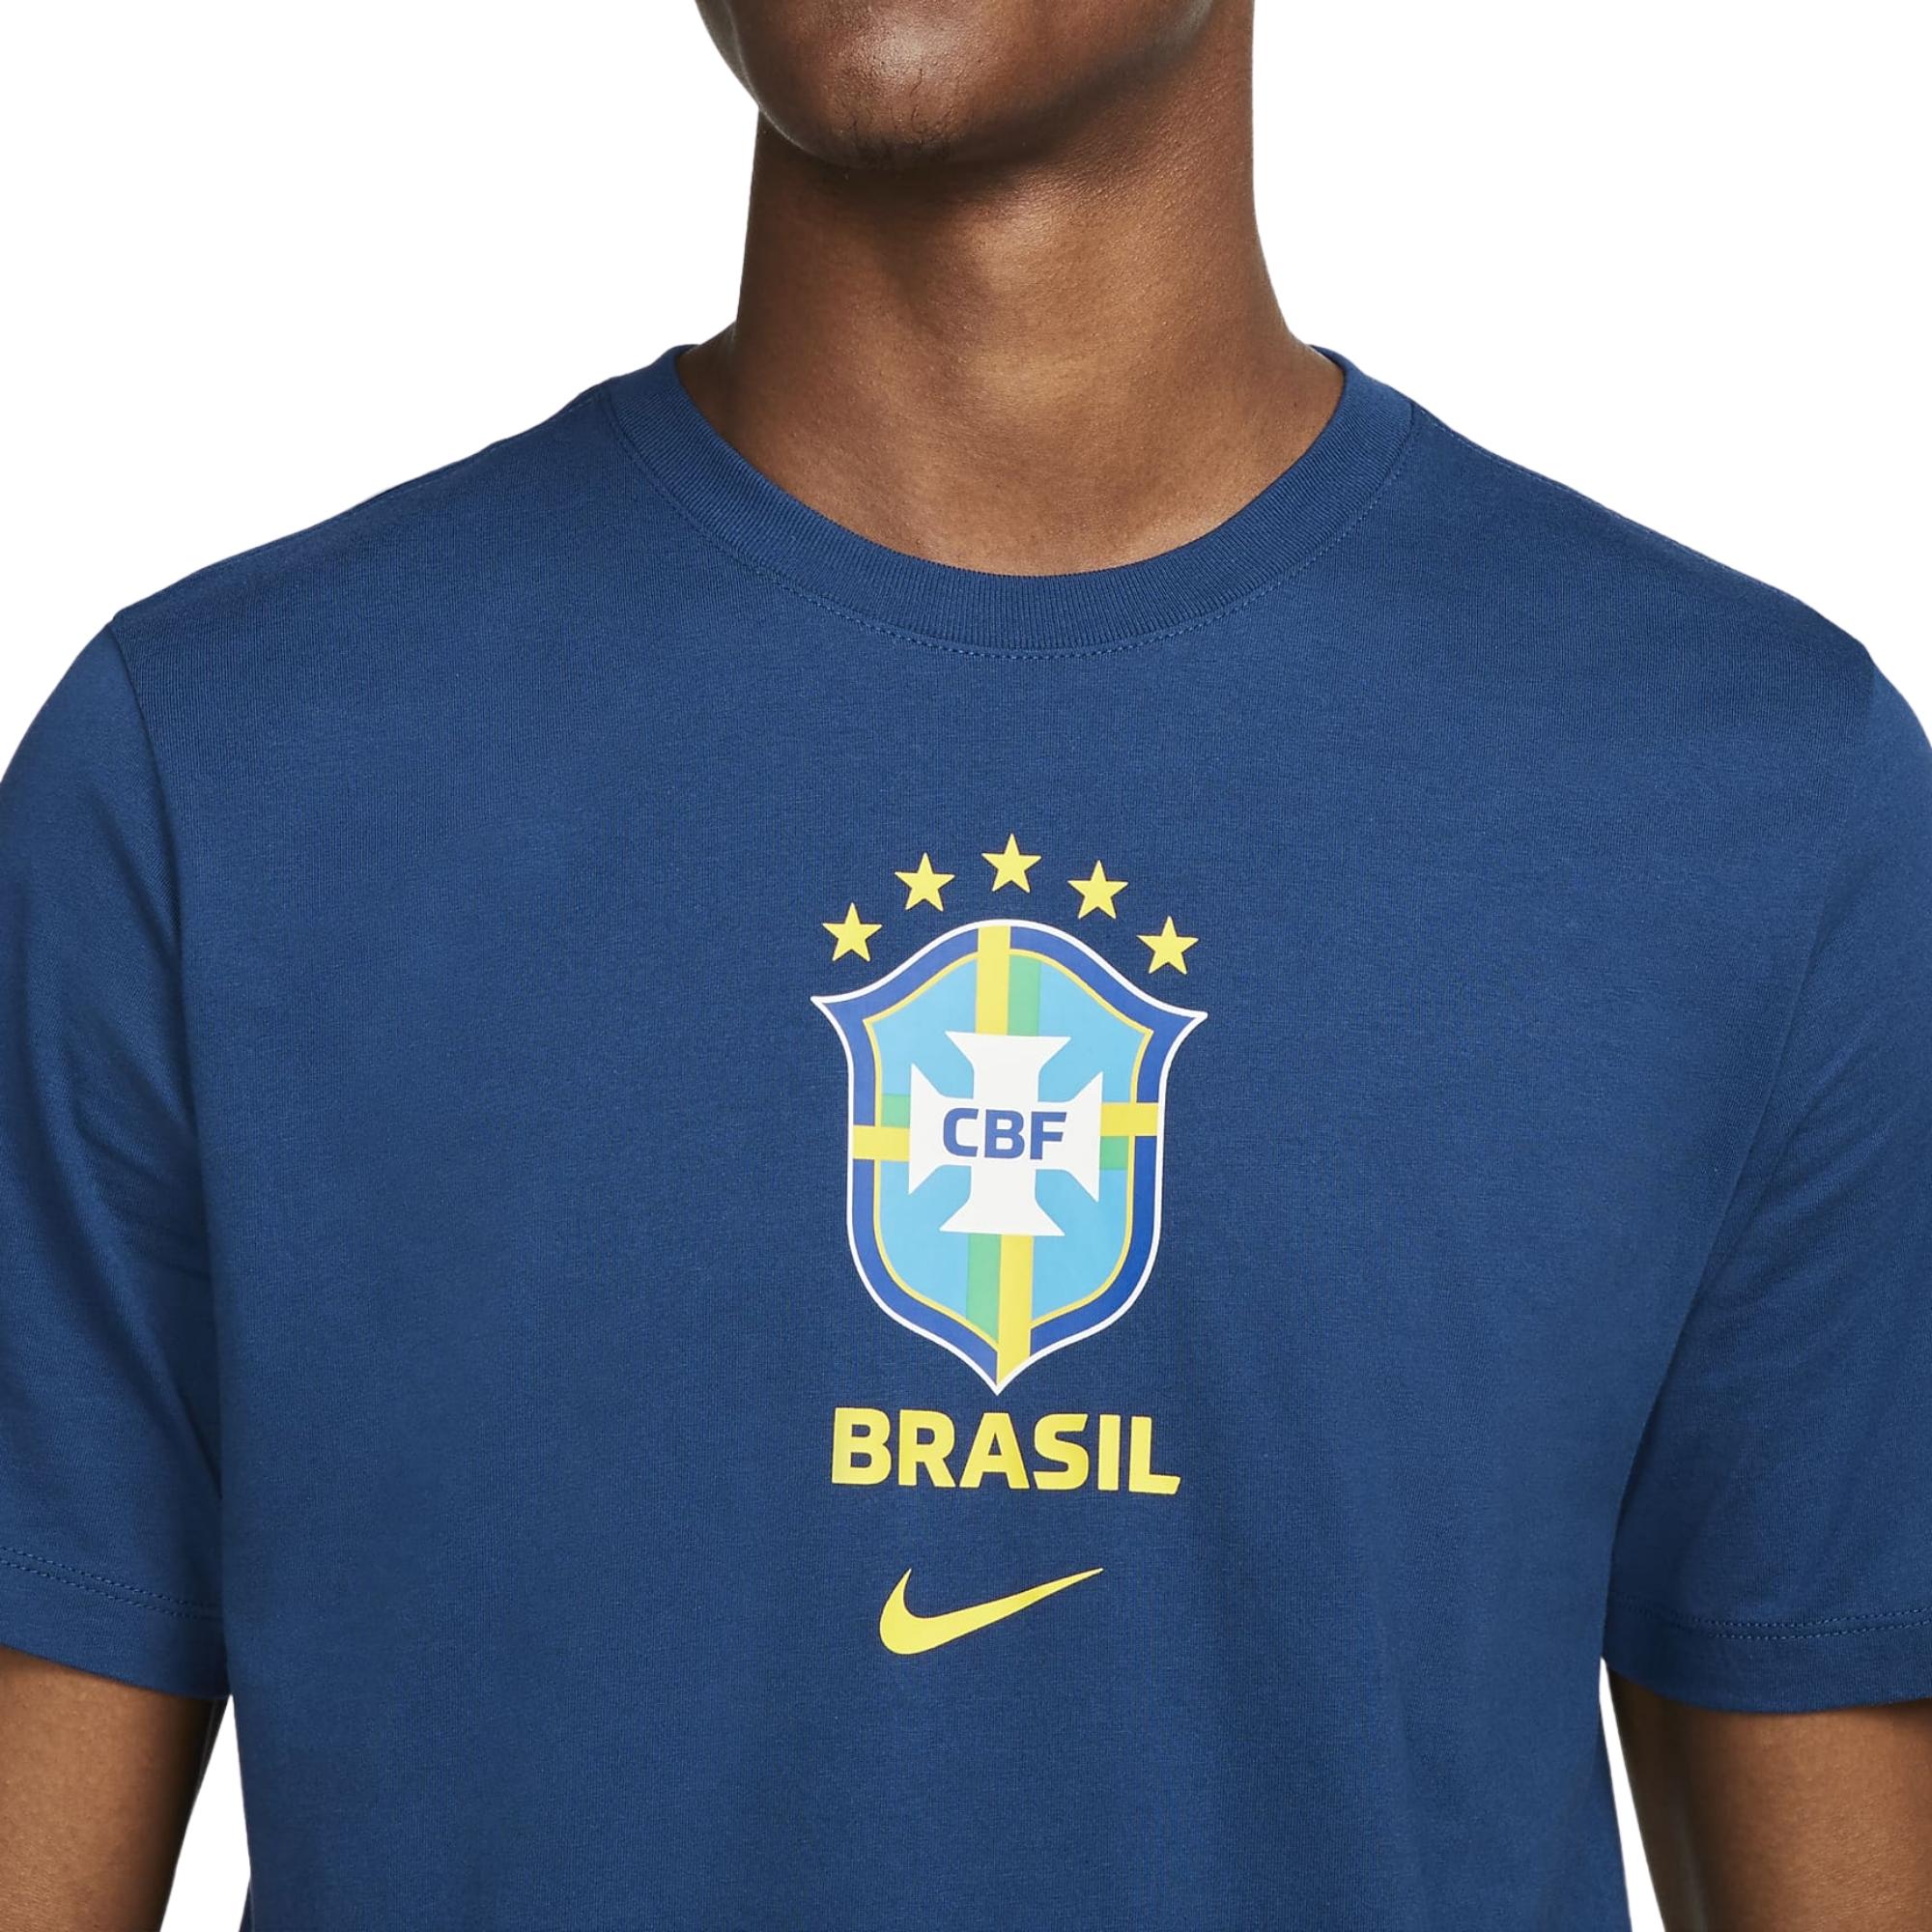 Camisa Brasil CBF Nike Pré Jogo Feminina - Verde/Azul - Bayard